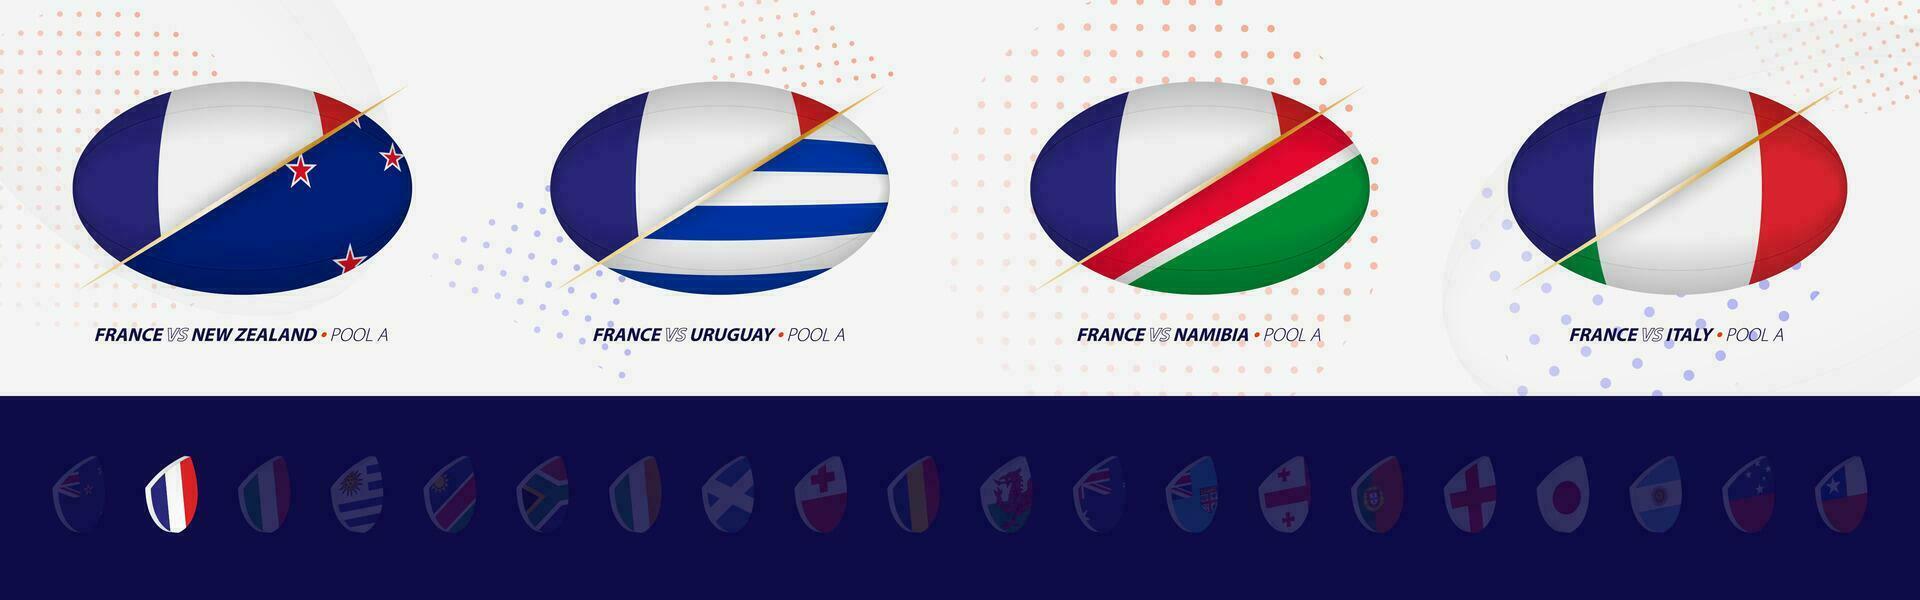 rugby konkurrens ikoner av Frankrike rugby nationell team, Allt fyra tändstickor ikon i slå samman. vektor